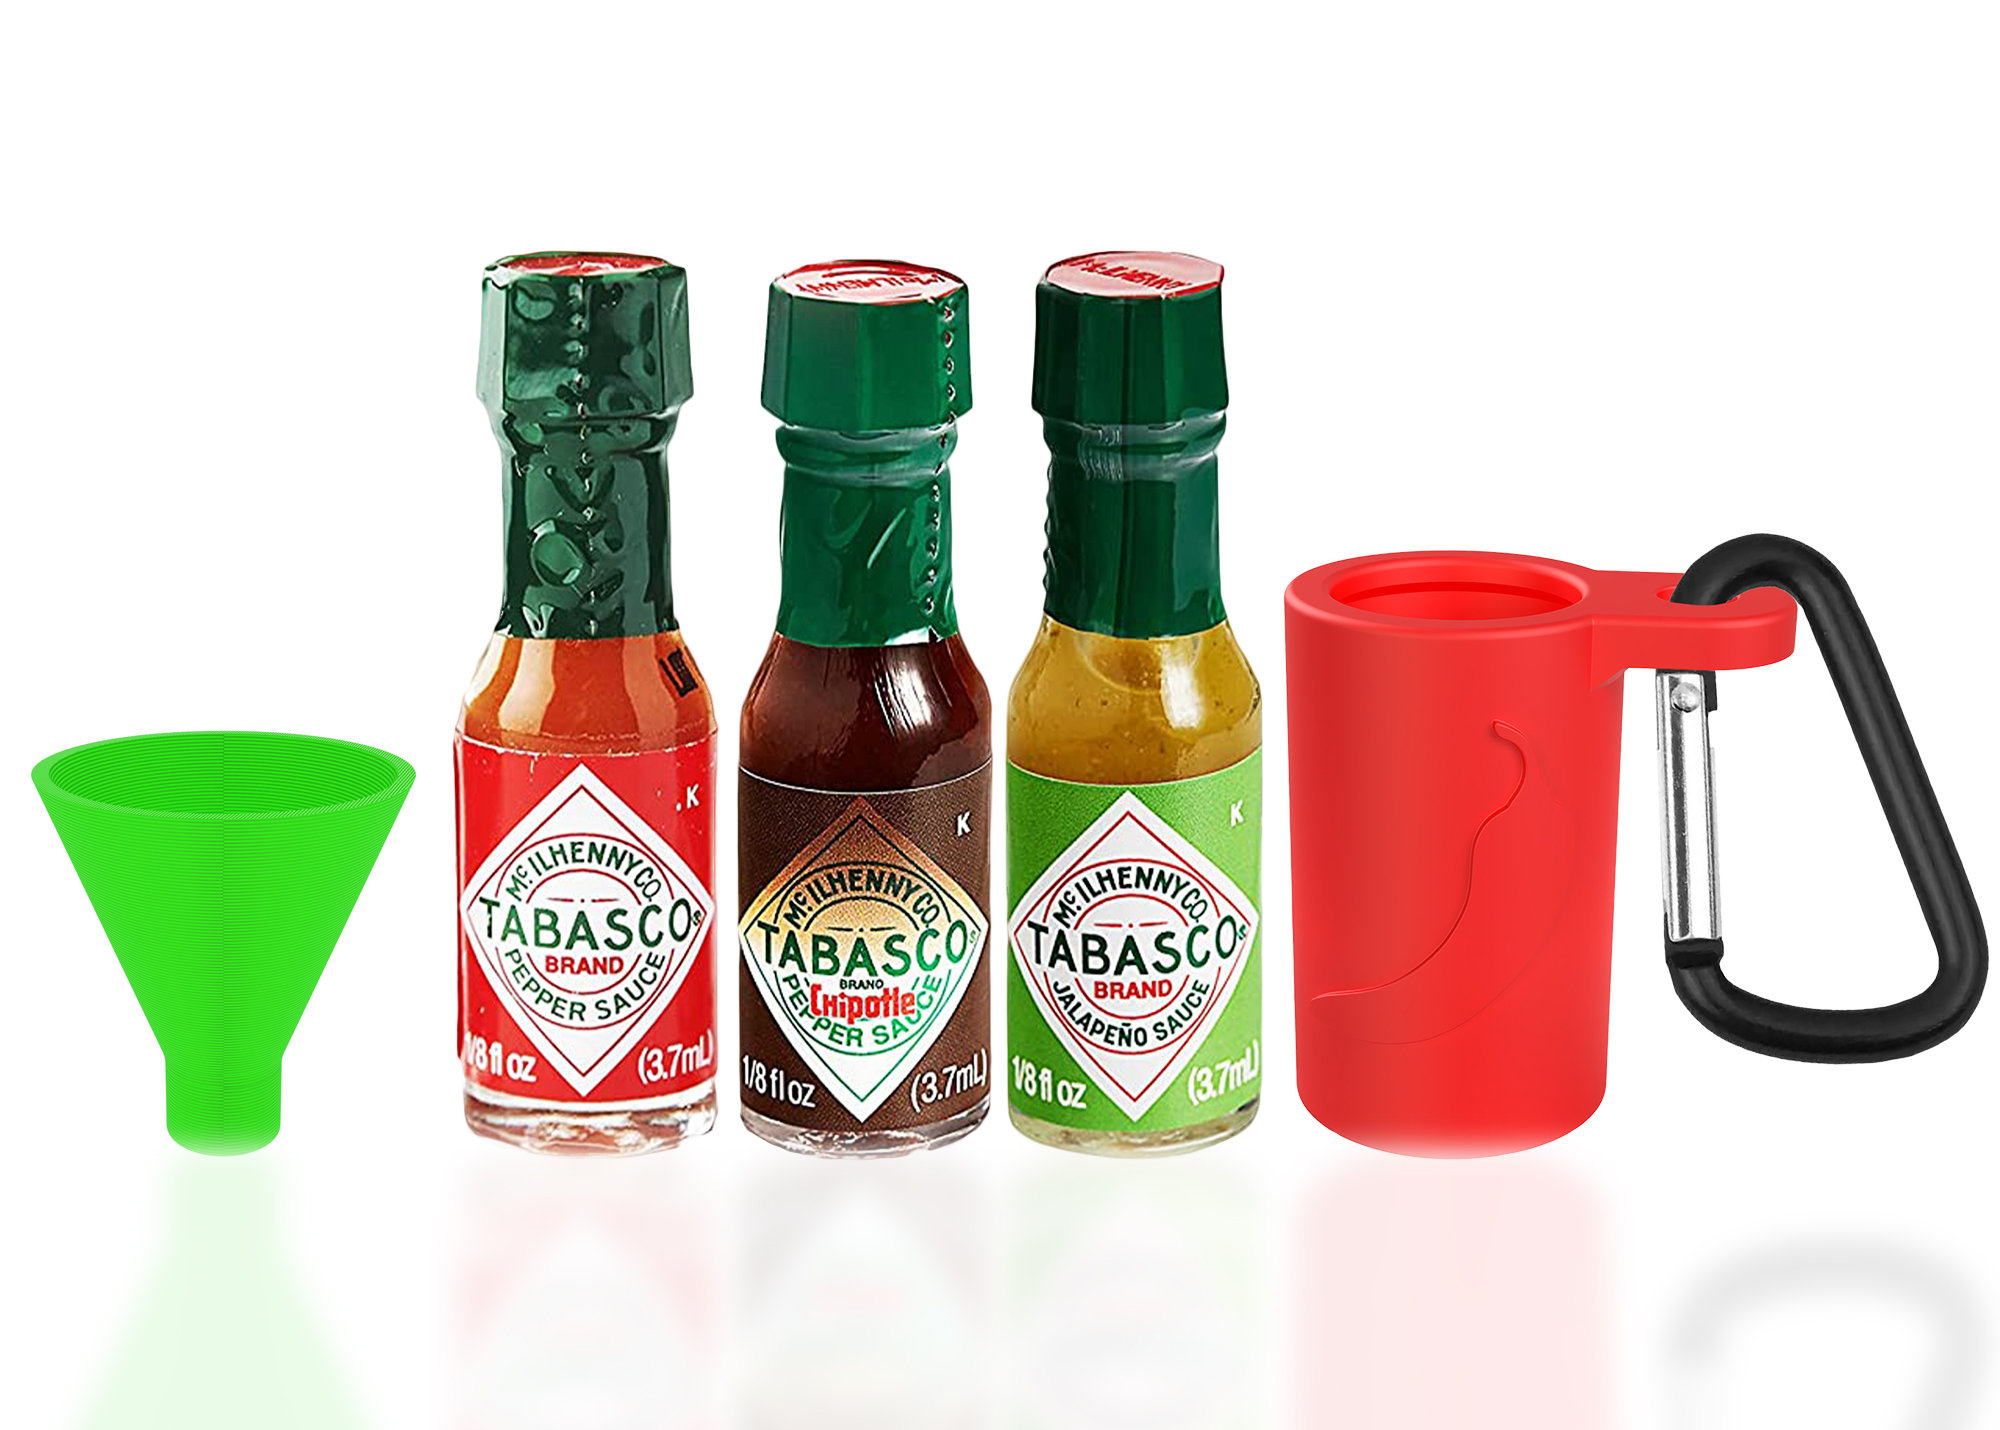 Emportez vos sauces partout avec ces 3 mini bouteilles animaux !